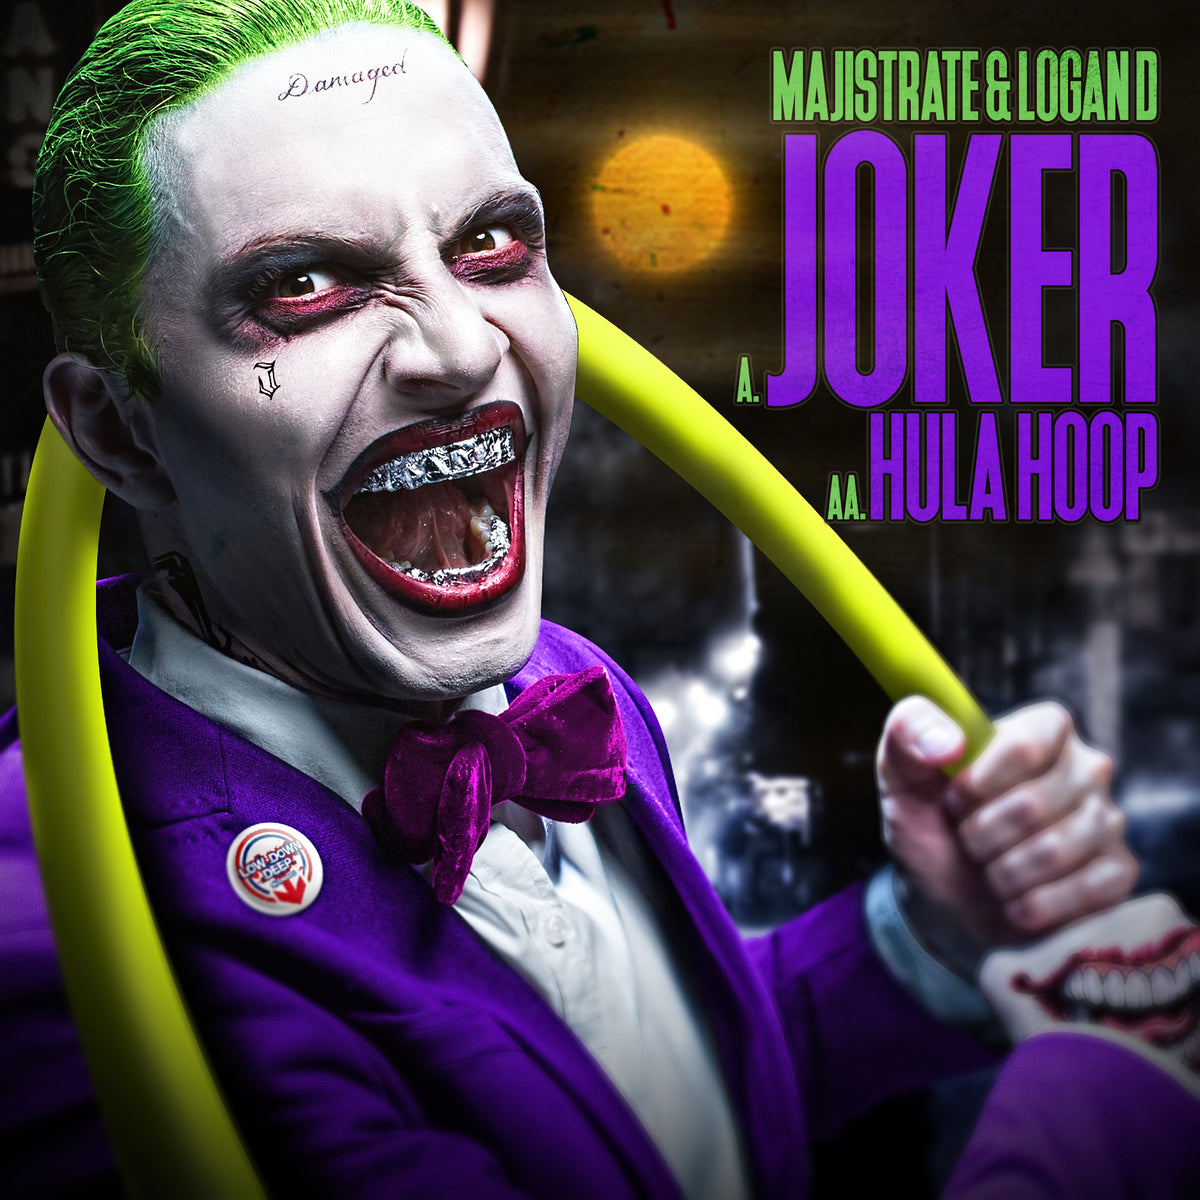 LDD 085 - Majistrate & Logan D 'Joker' | 'Hula Hoop'